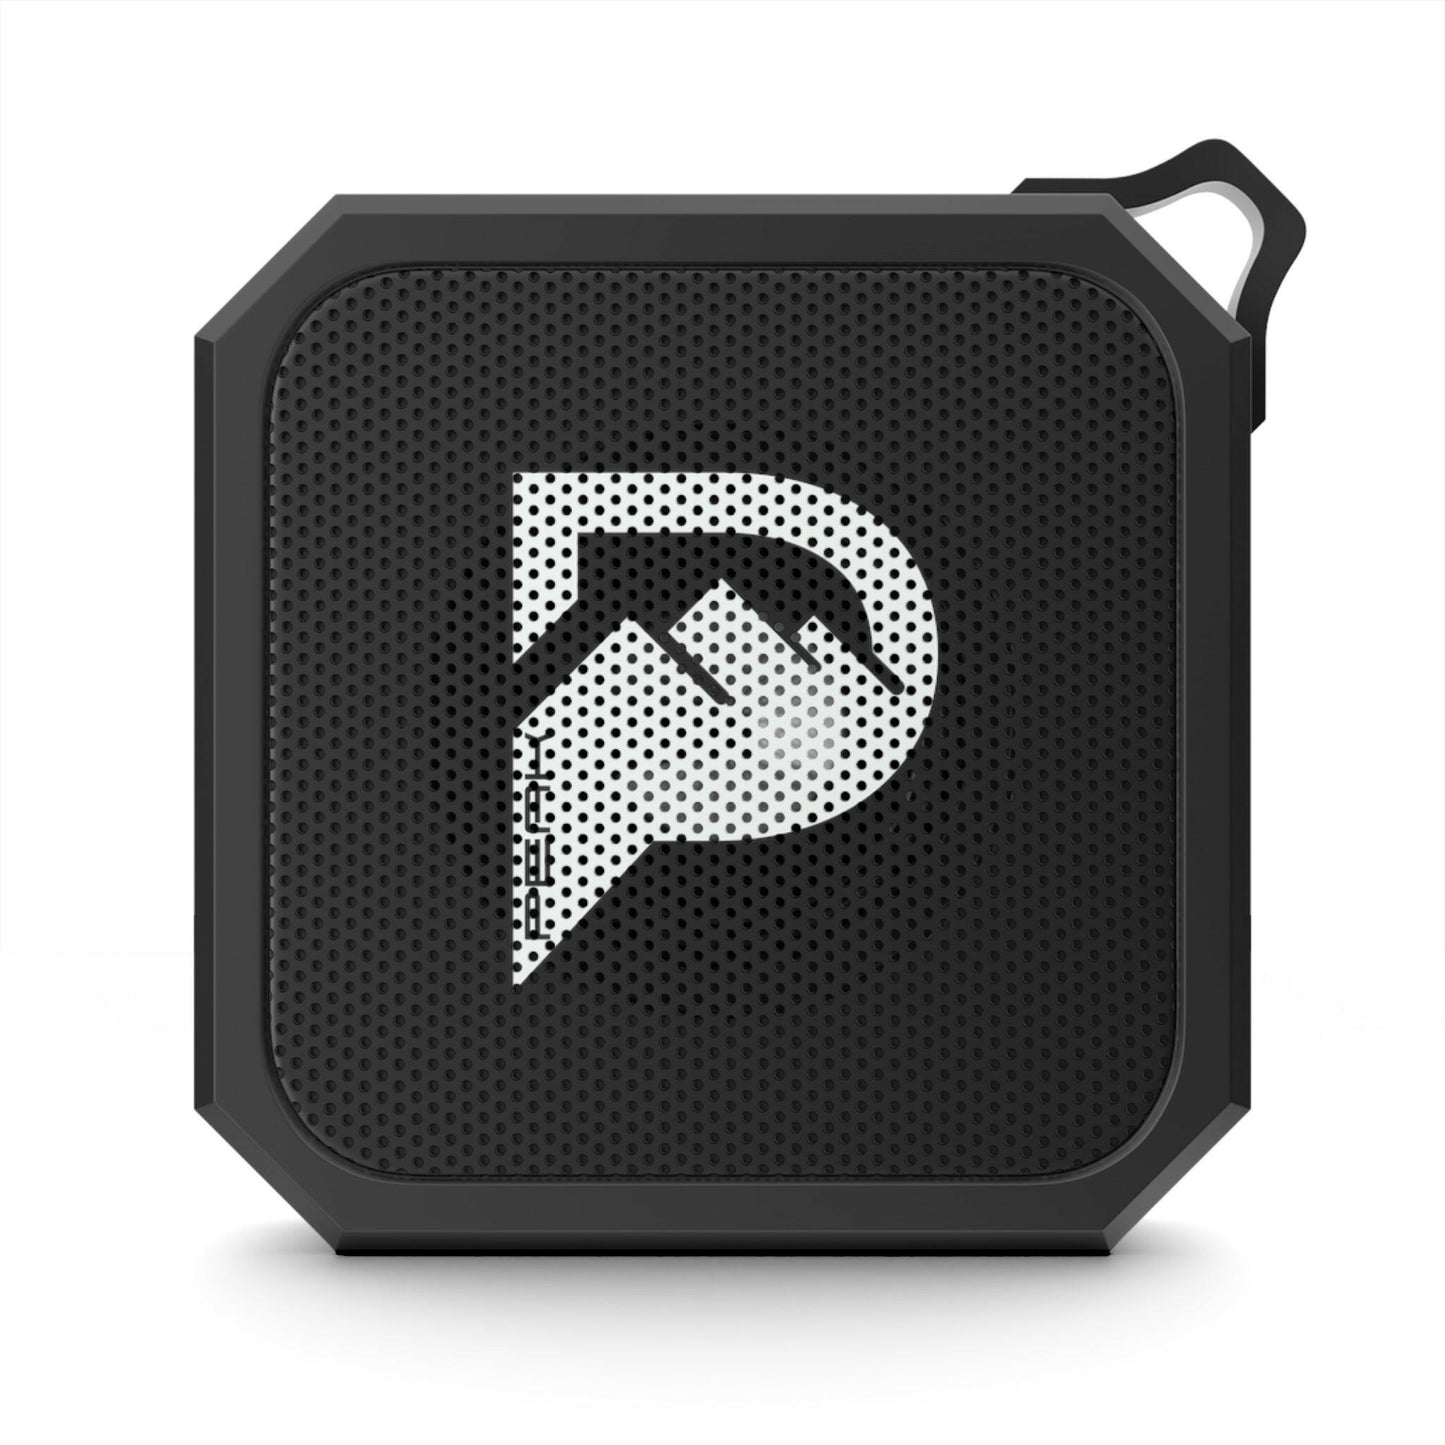 PEAK IPX6 Certified Outdoor Bluetooth Speaker